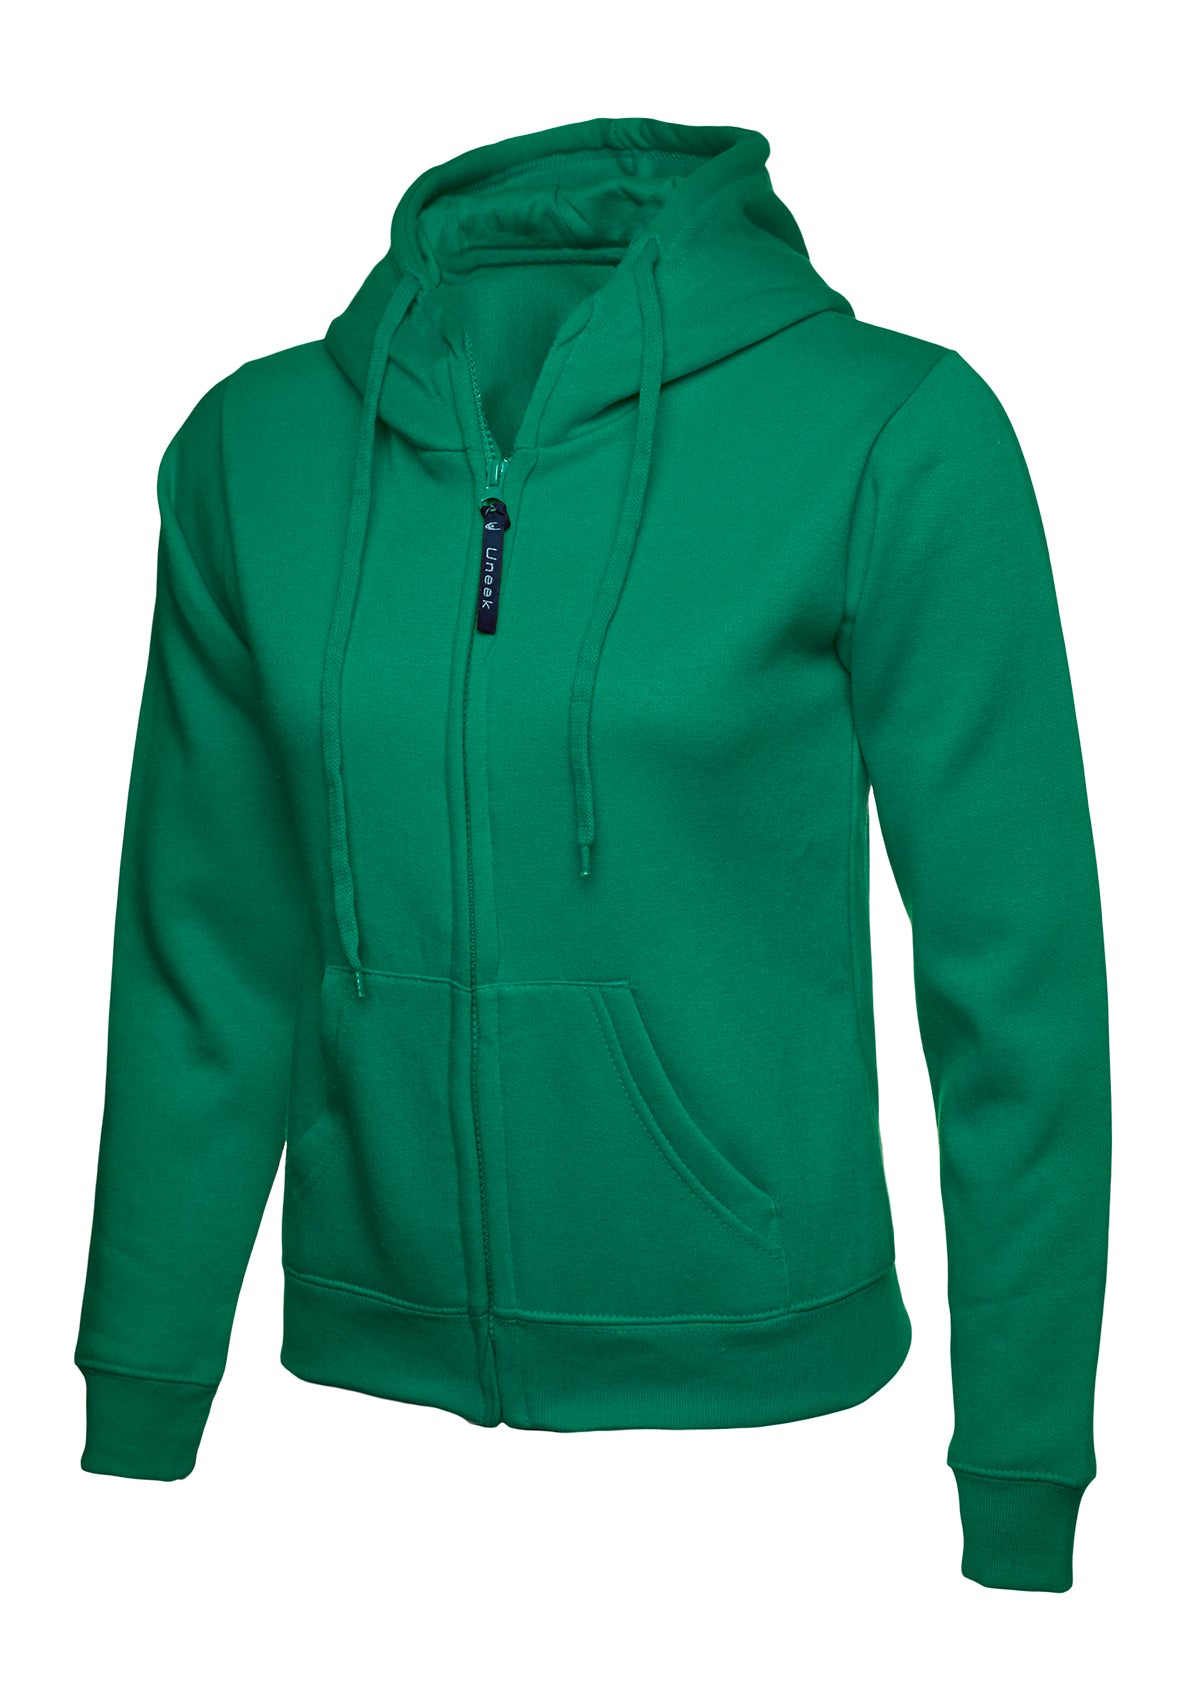 Uneek Ladies Classic Full Zip Hooded Sweatshirt UC505 - Kelly Green